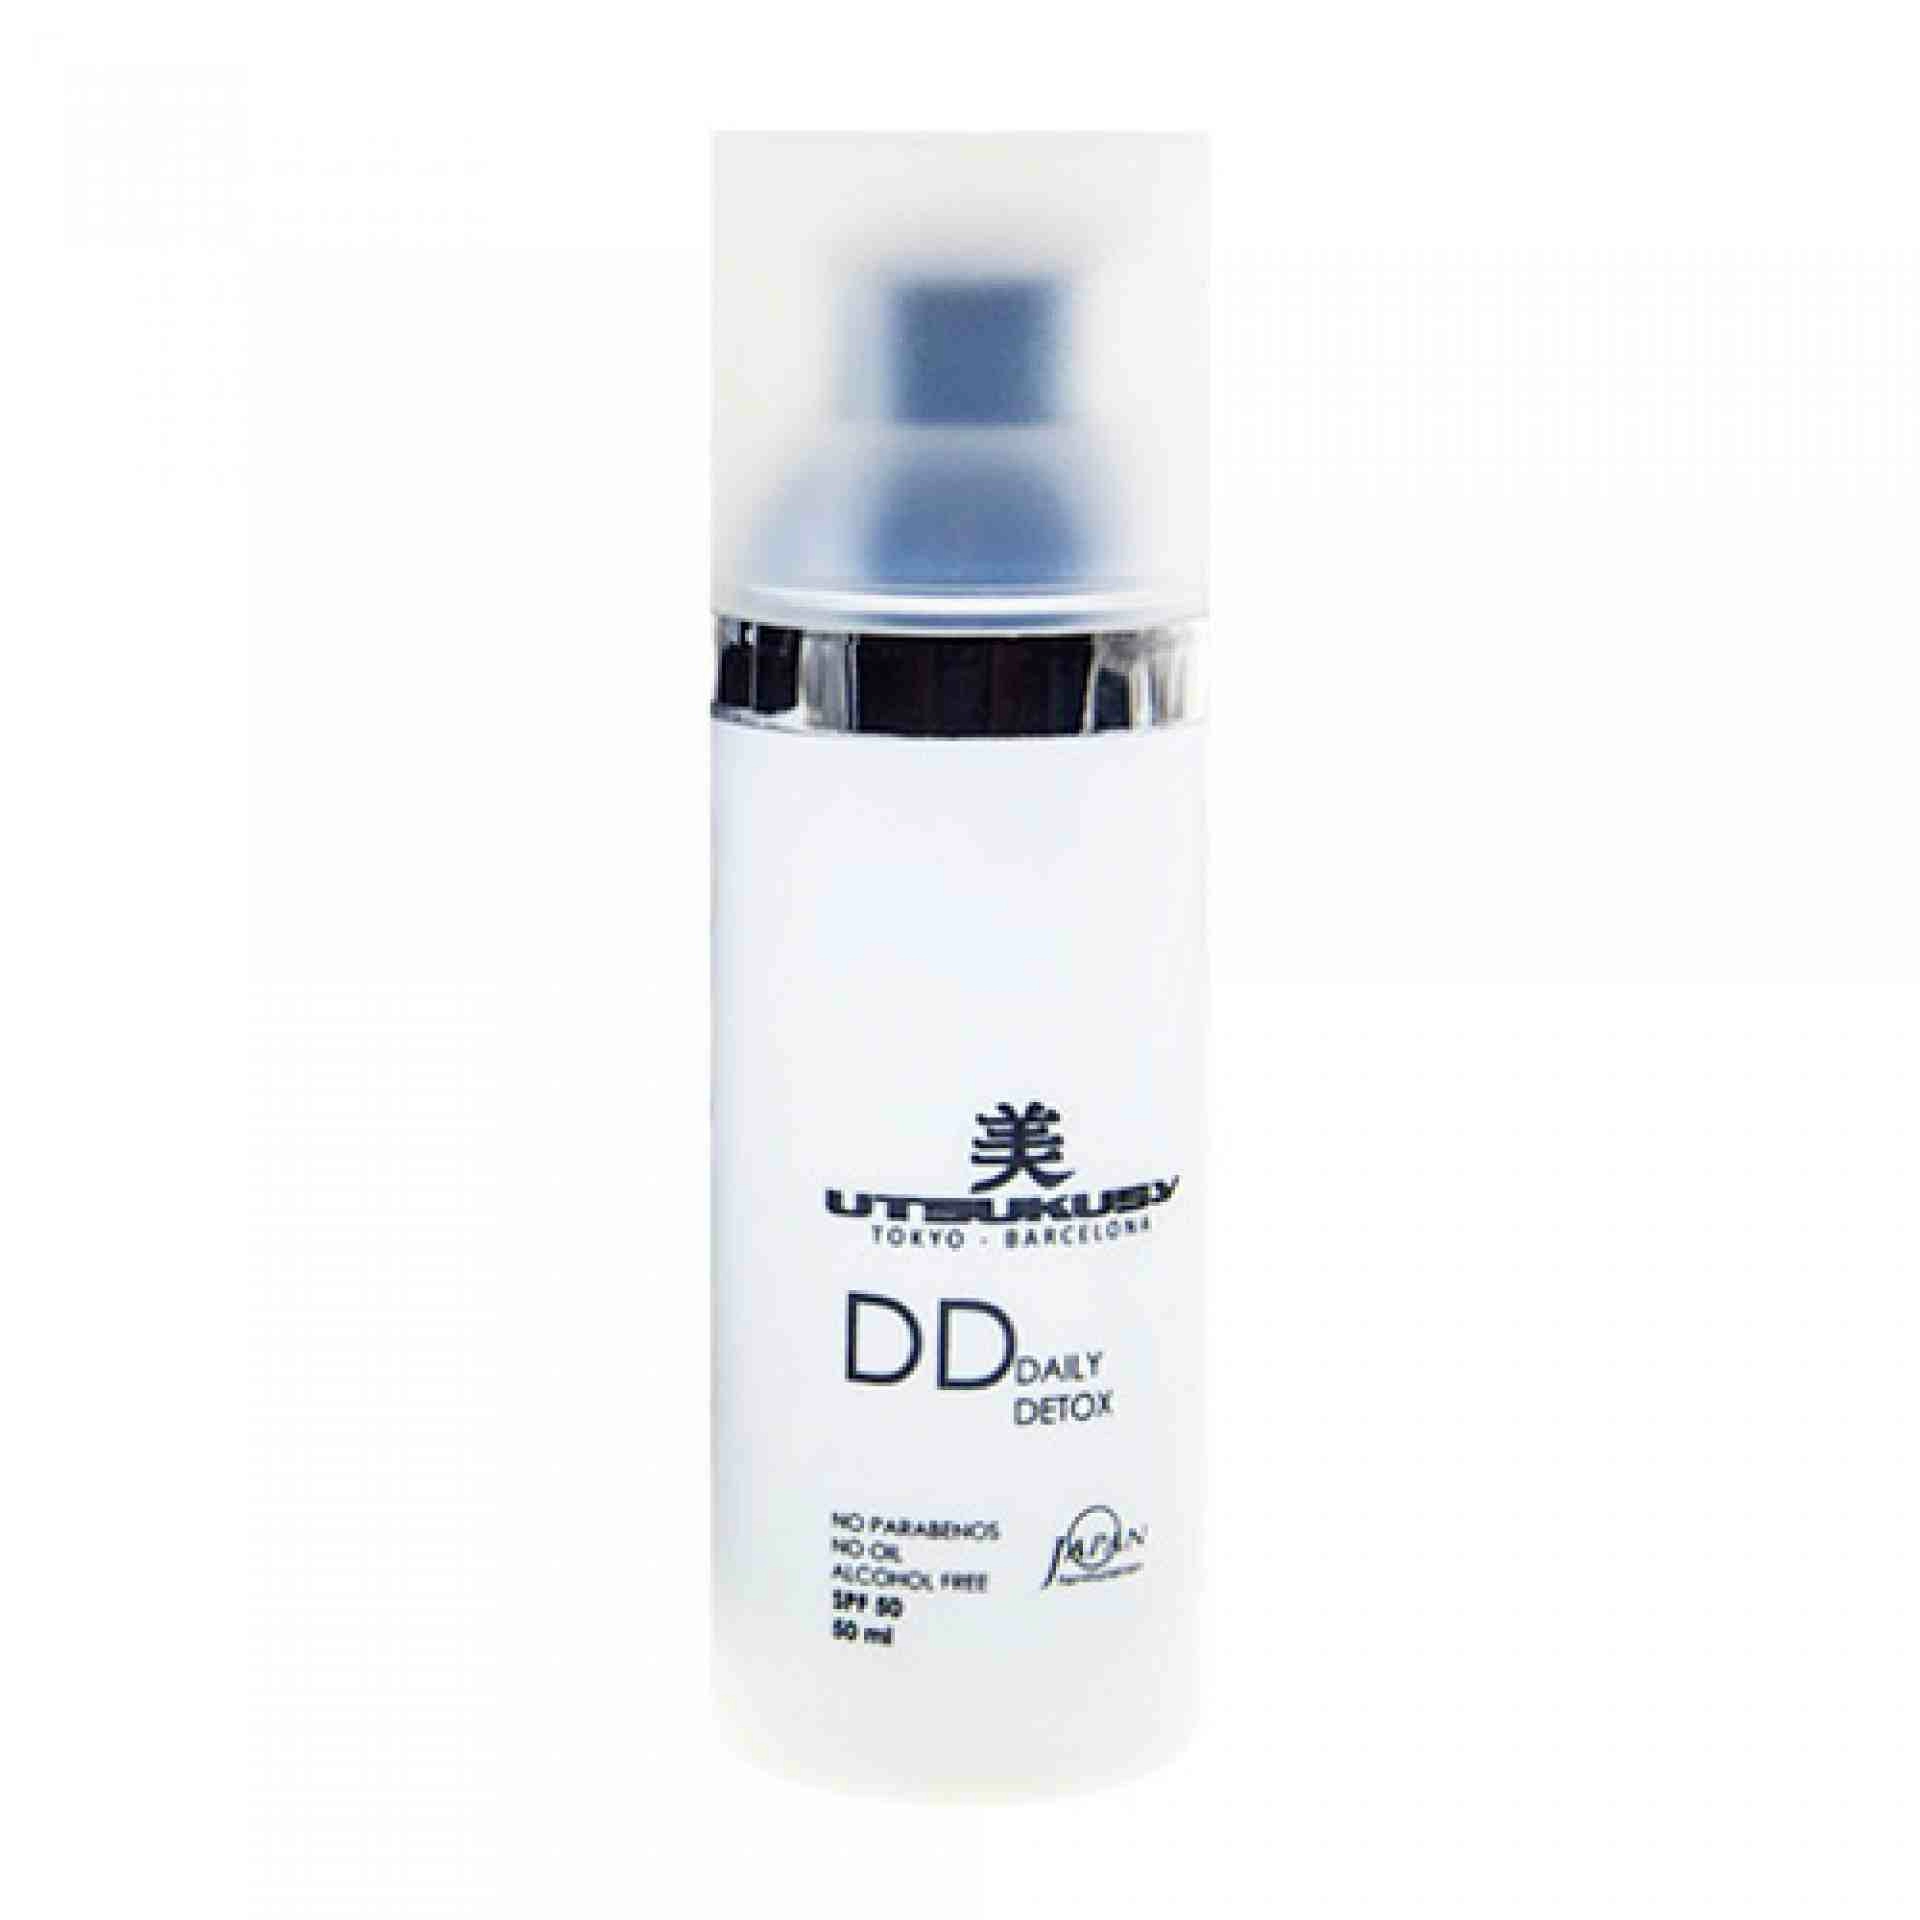 DD Cream 50ml | Crema tono oscuro - Utsukusy ®